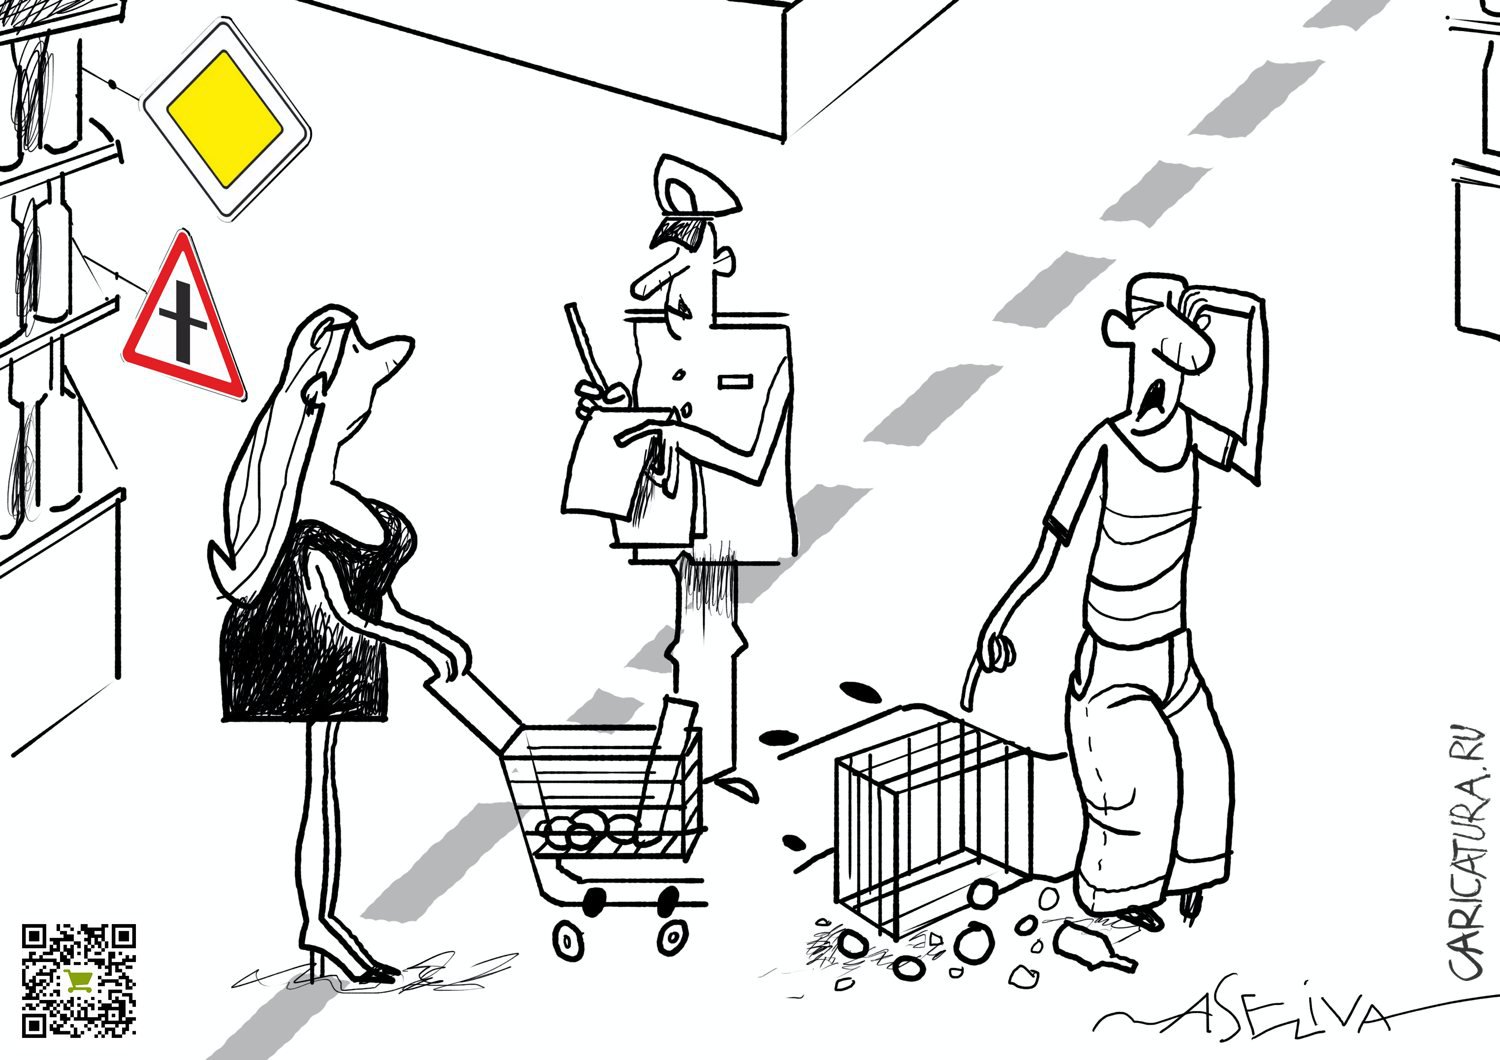 Карикатура "Вчера в супермаркете. Небольшое автопроисшествие", Андрей Селиванов